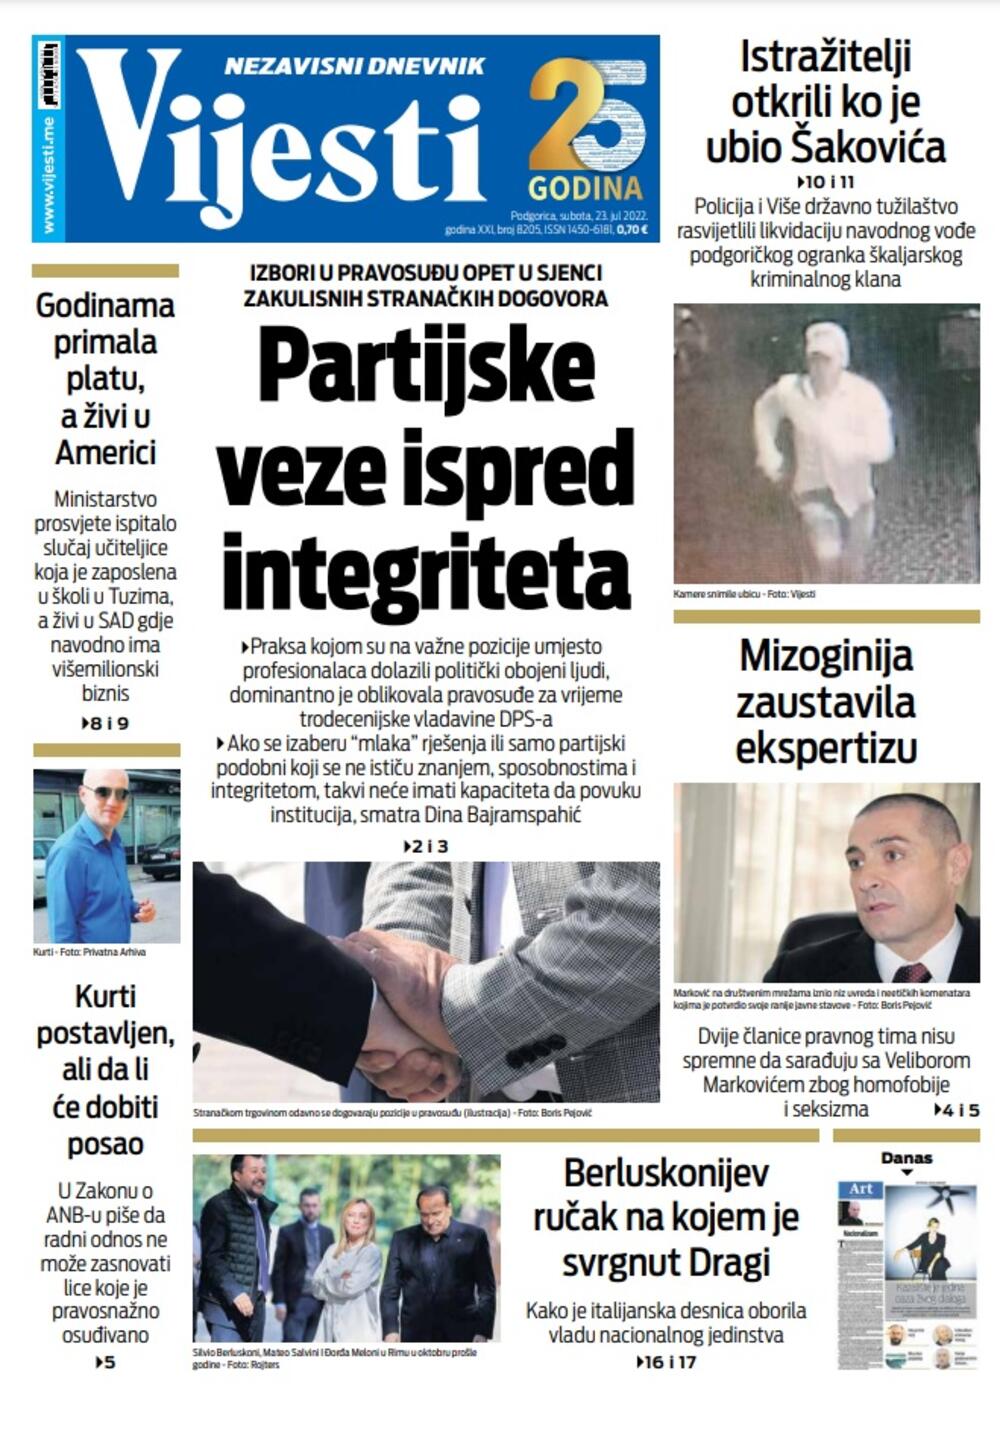 Naslovna strana "Vijesti" za 23. jul 2022., Foto: Vijesti